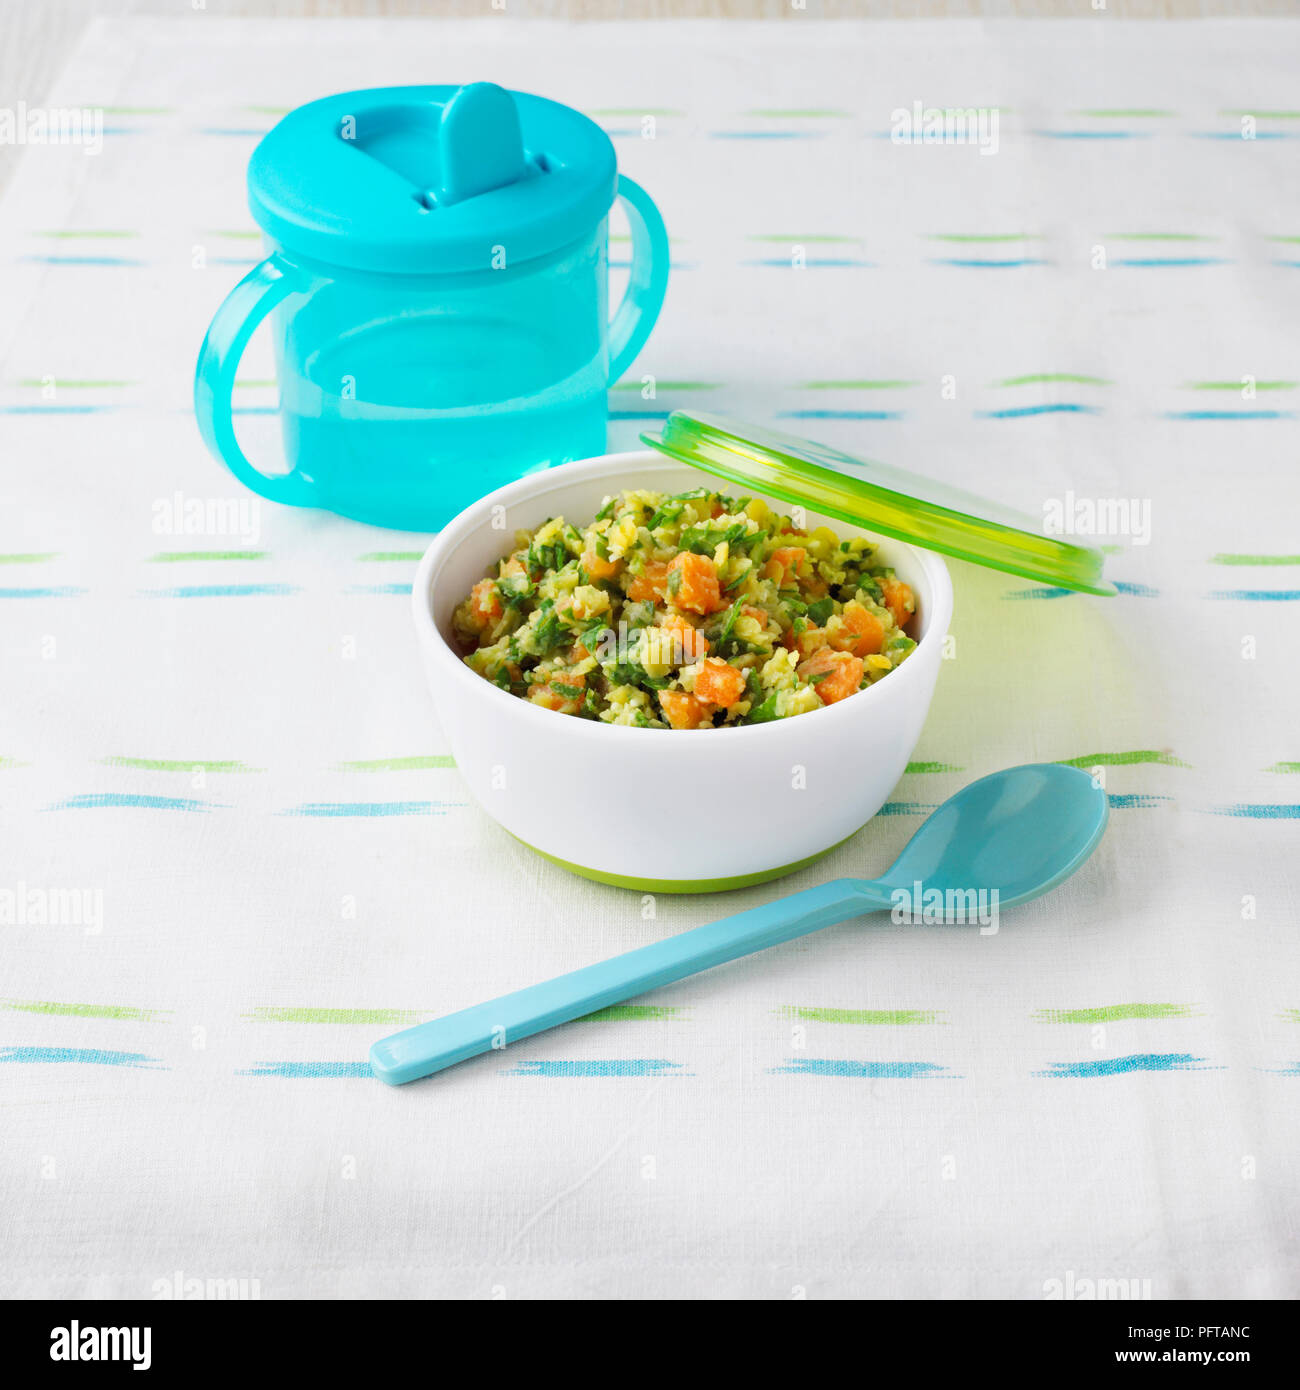 Lenticchie con carote e spinaci, tazza in plastica, cibi per bambini Foto Stock